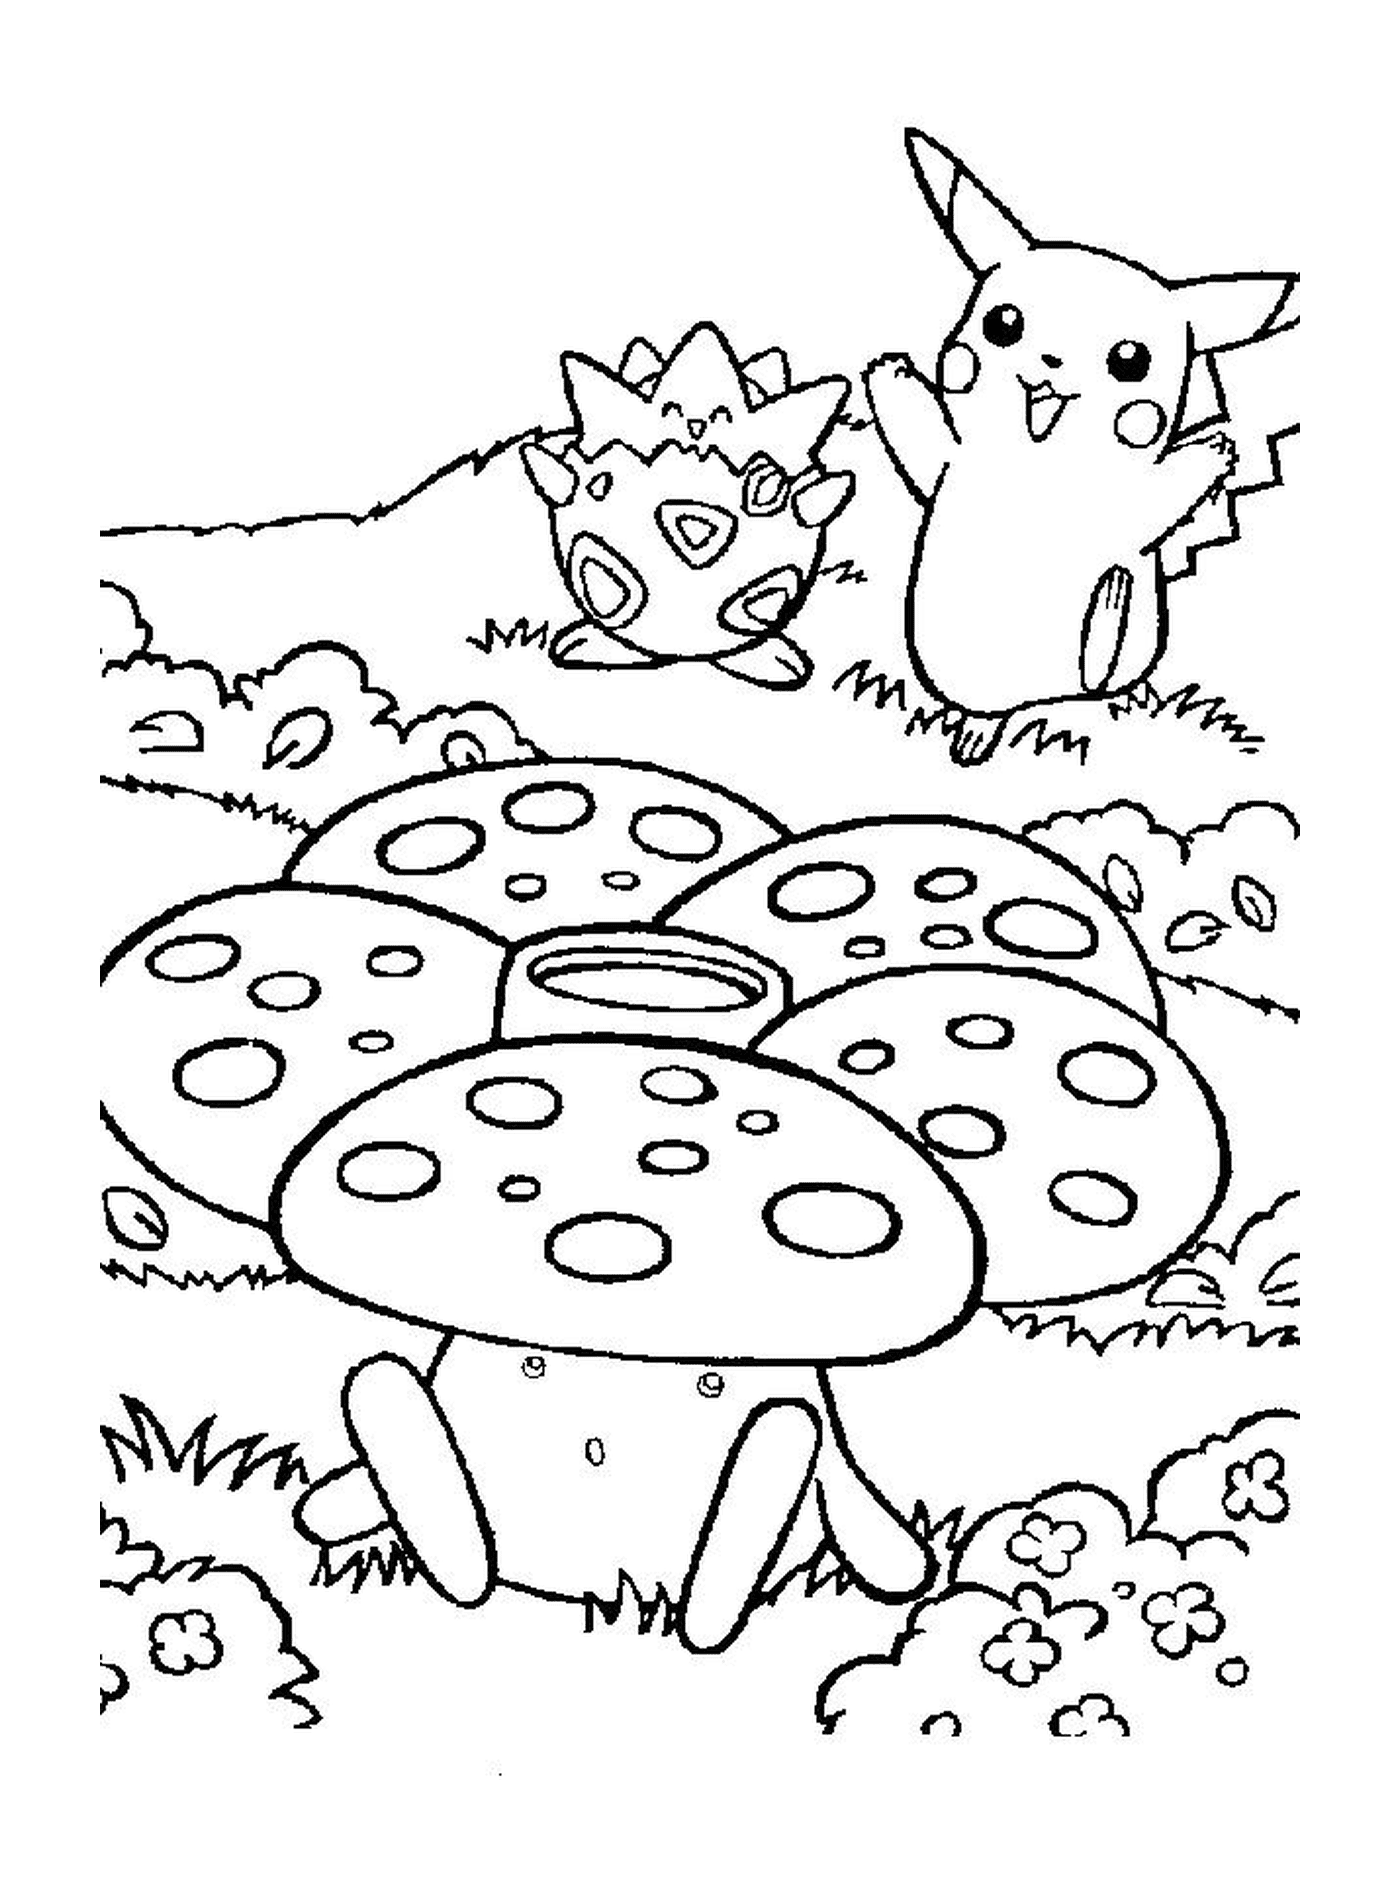  Pikachu com um fungo 